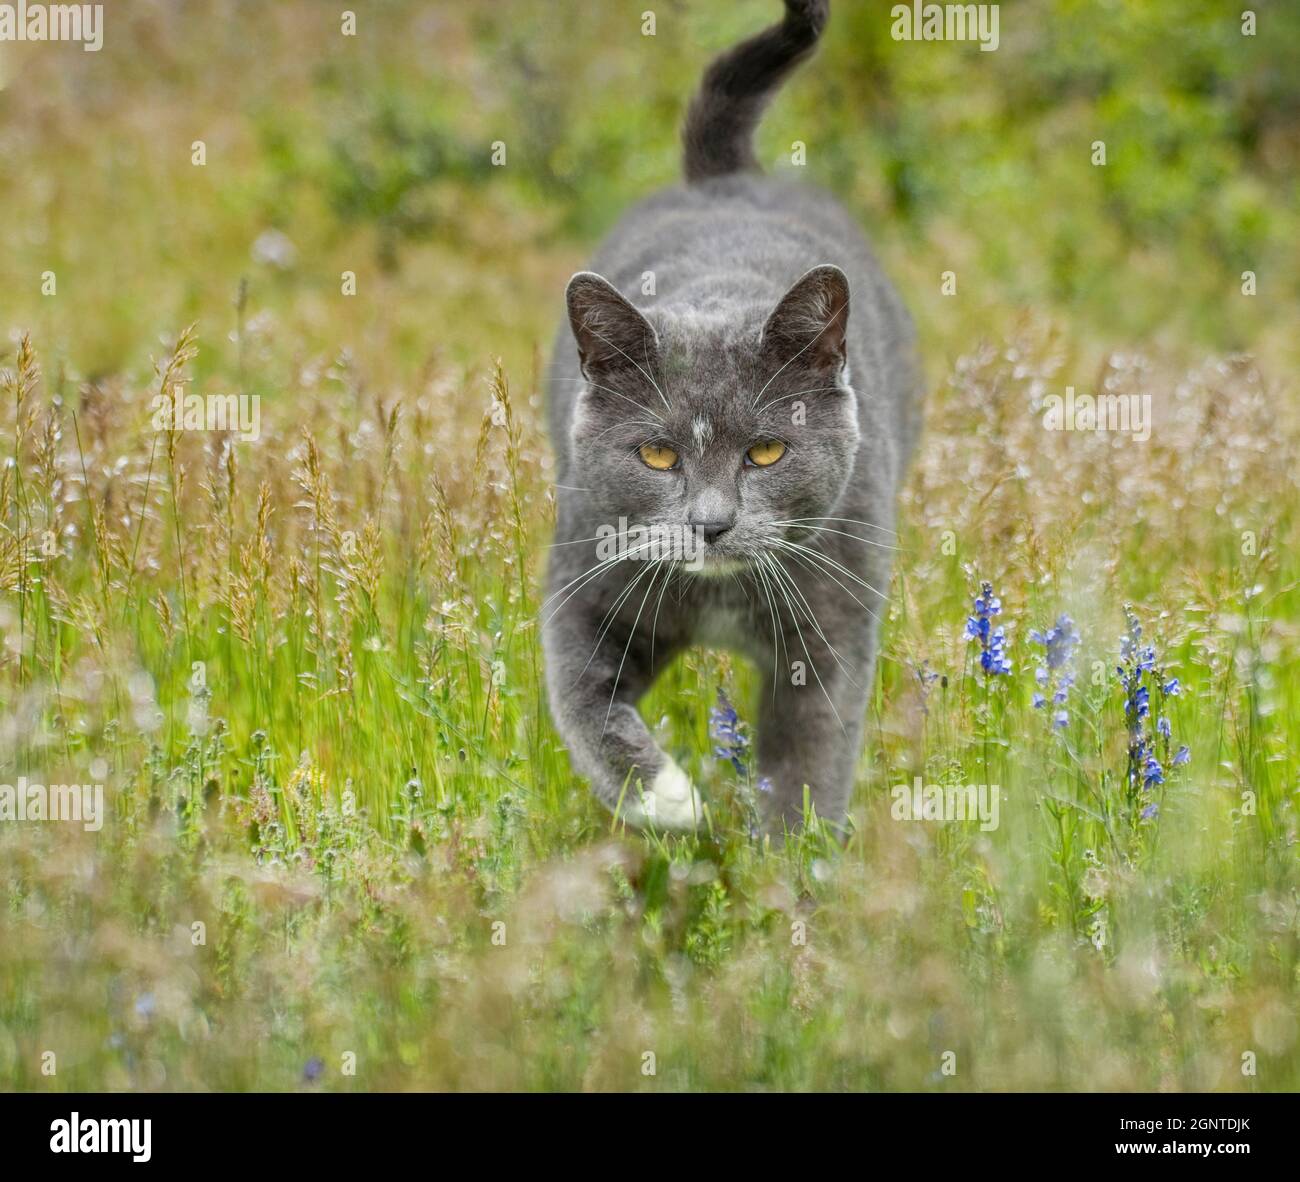 Smokey gray tuxedo Tom cat walks in wildflower meadow Stock Photo